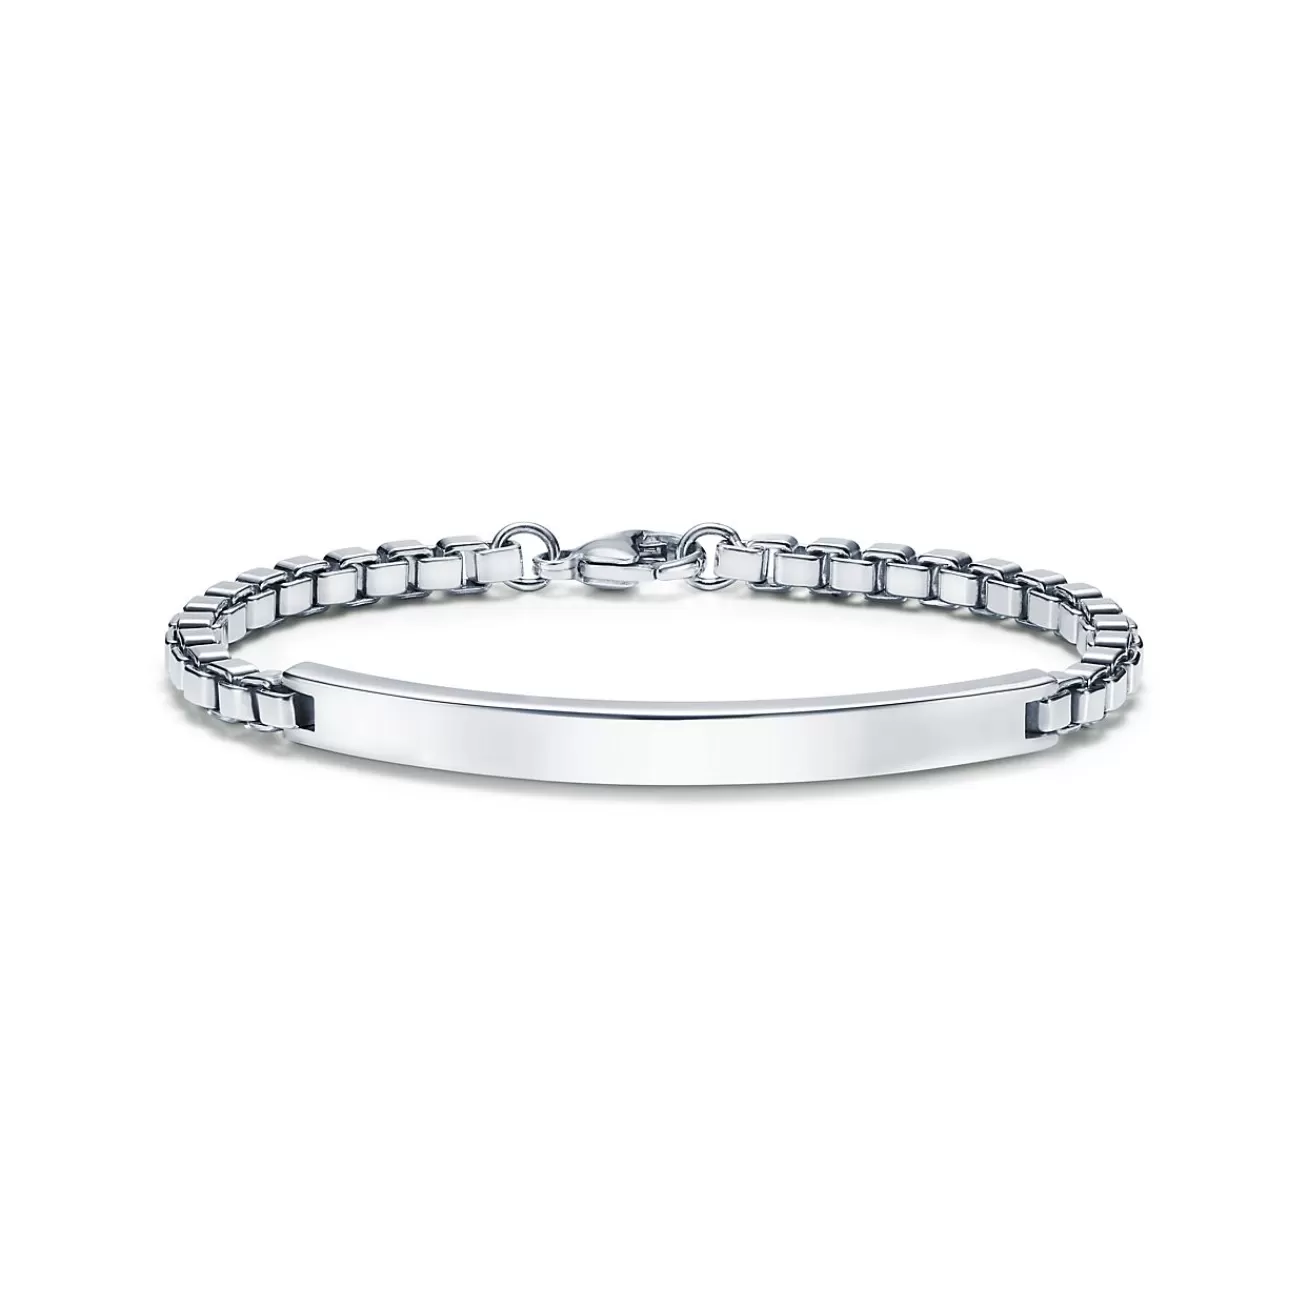 Tiffany & Co. Venetian Link I.D. men's bracelet in sterling silver. | ^ Bracelets | Men's Jewelry